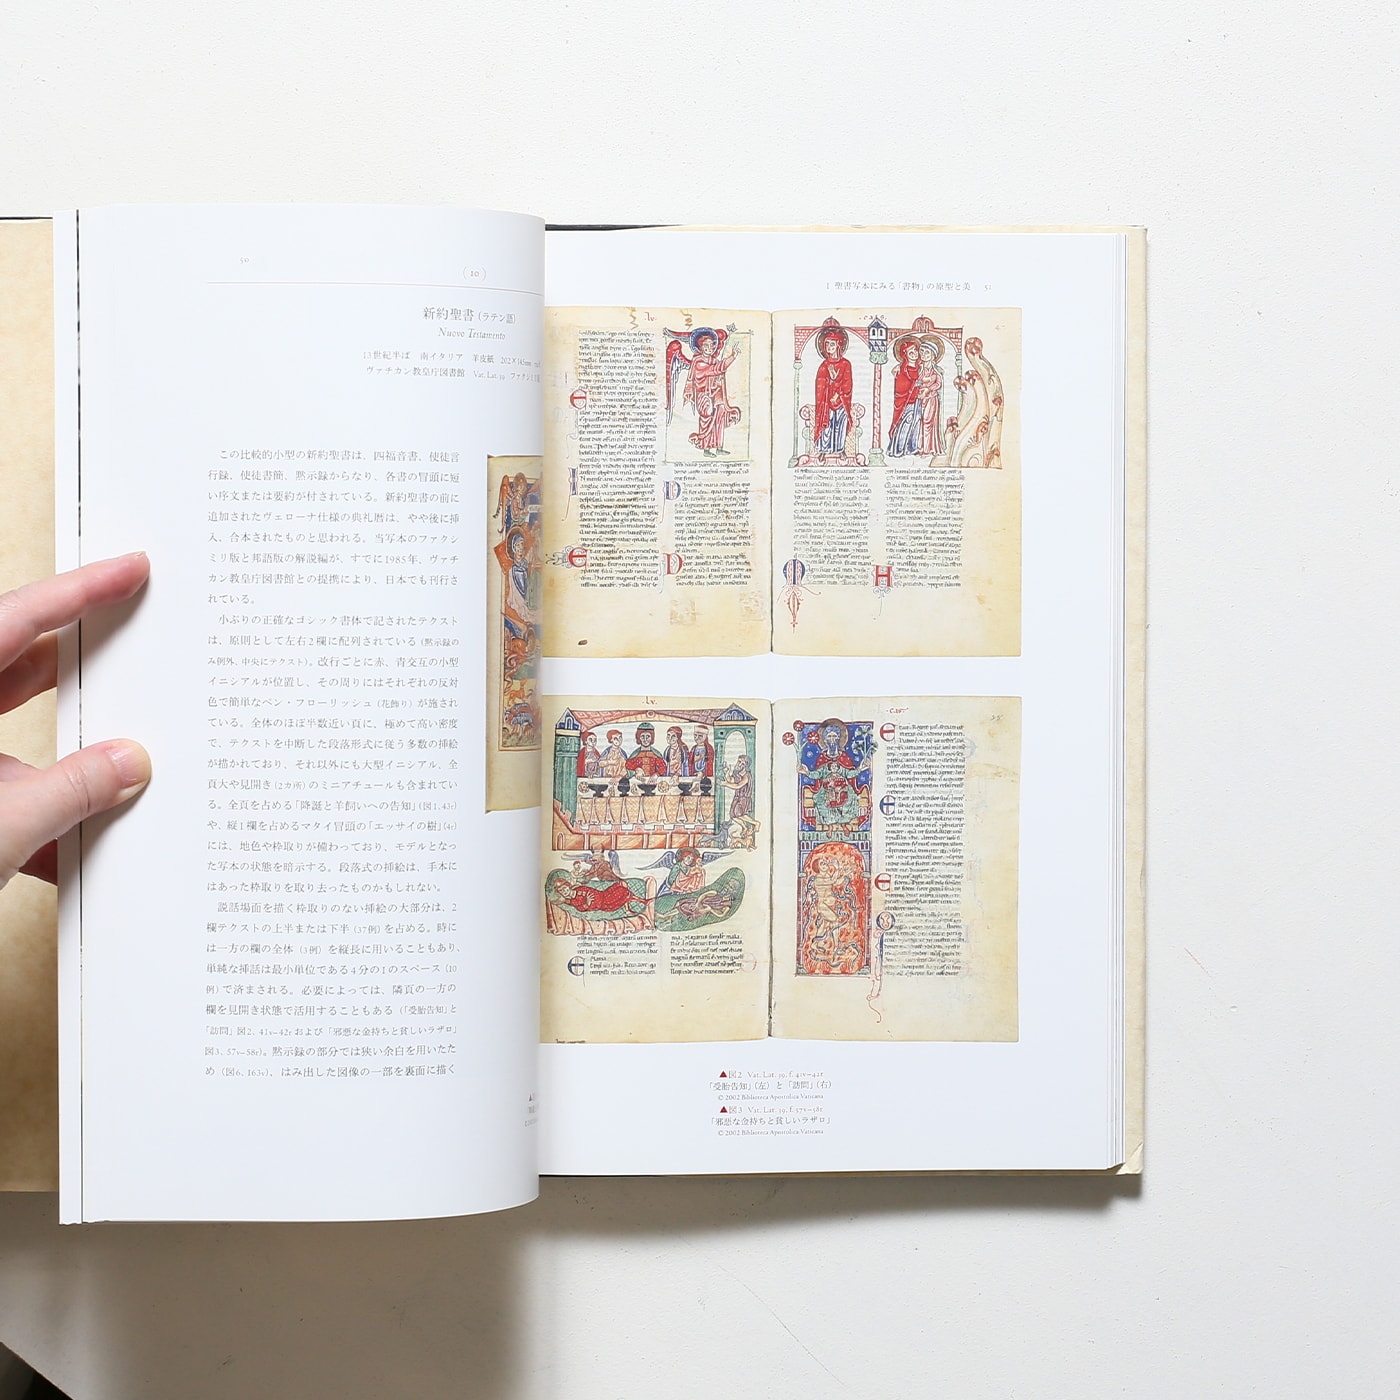 ヴァチカン教皇庁図書館展 書物の誕生 写本から印刷へ | トッパン 